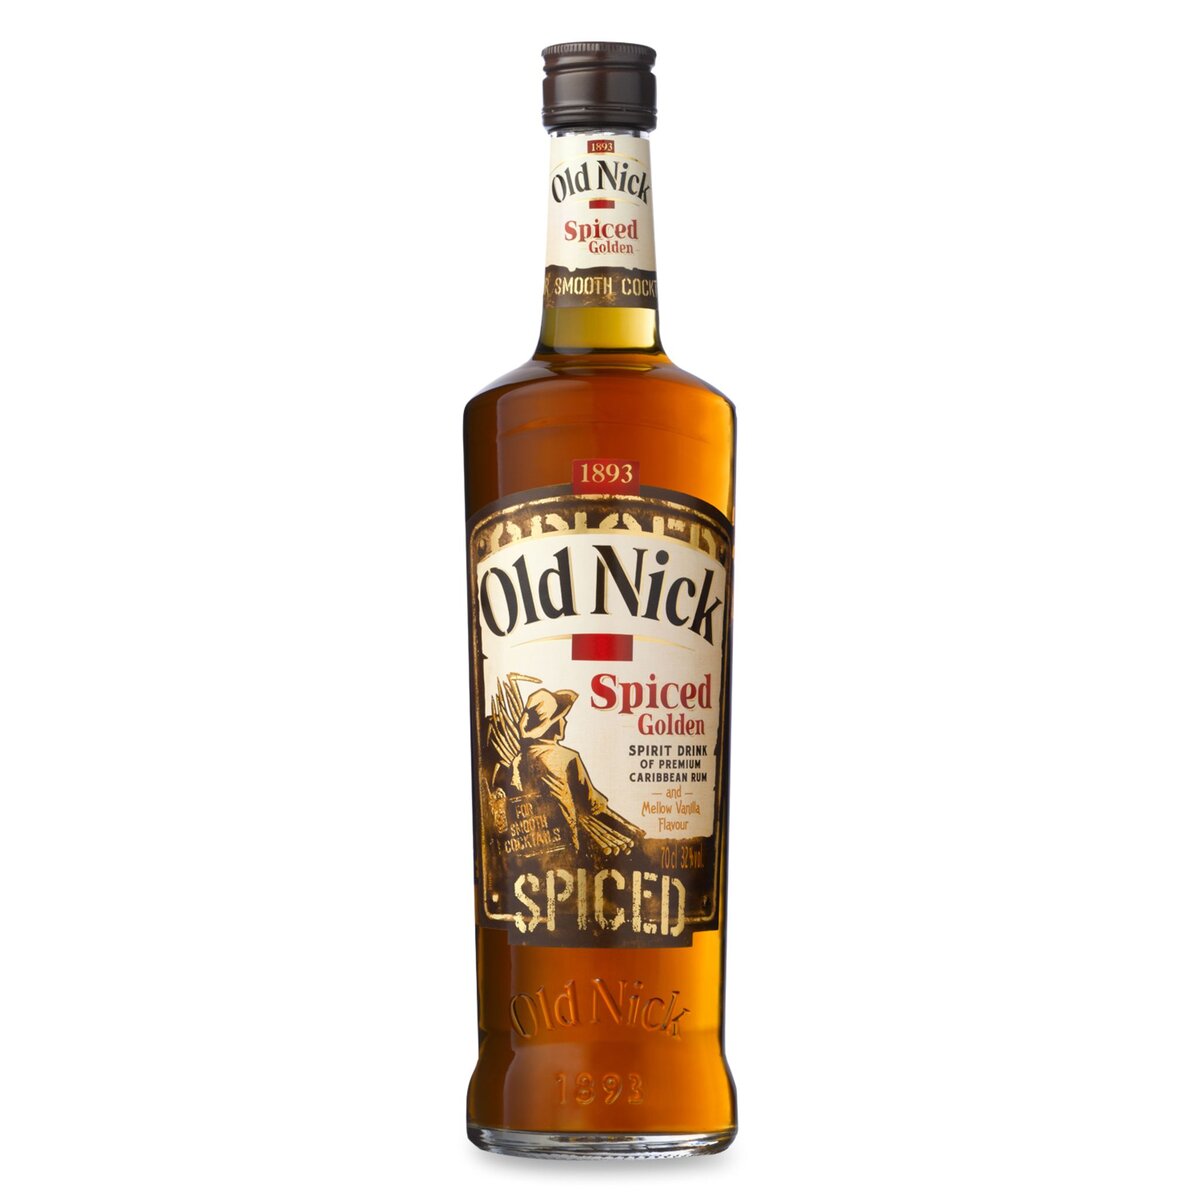 OLD NICK Old Nick rhum spiced golden 32° -70cl